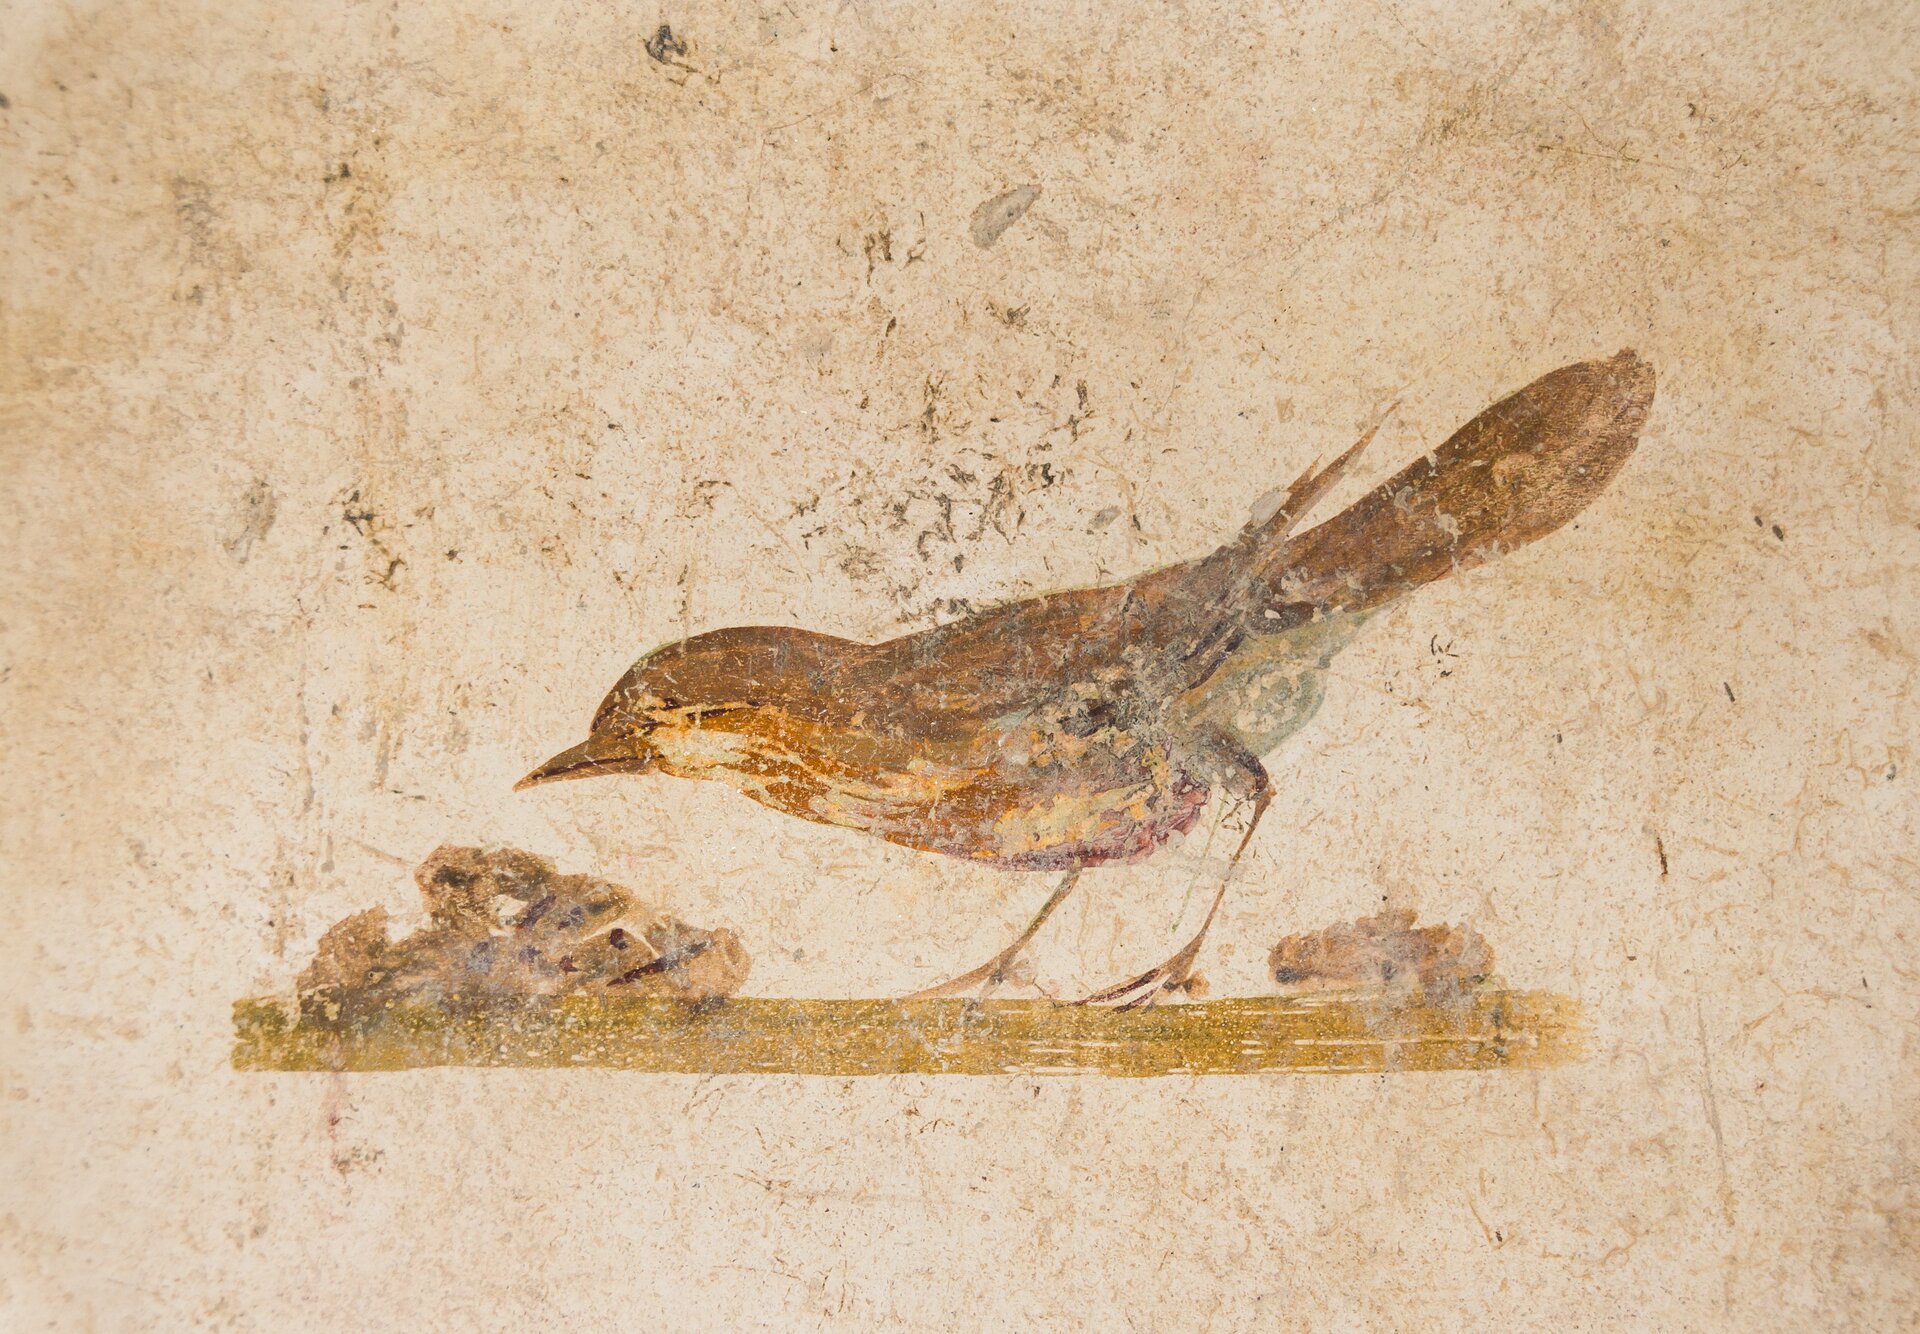 Ilustracja przedstawia fresk pochodzący z Willa Poppei w Oplontis. Fresk ukazuje ptaka, budującego gniazdo. Ptak jest koloru brązowego. Jego dziób skierowany jest w stronę gniazda.